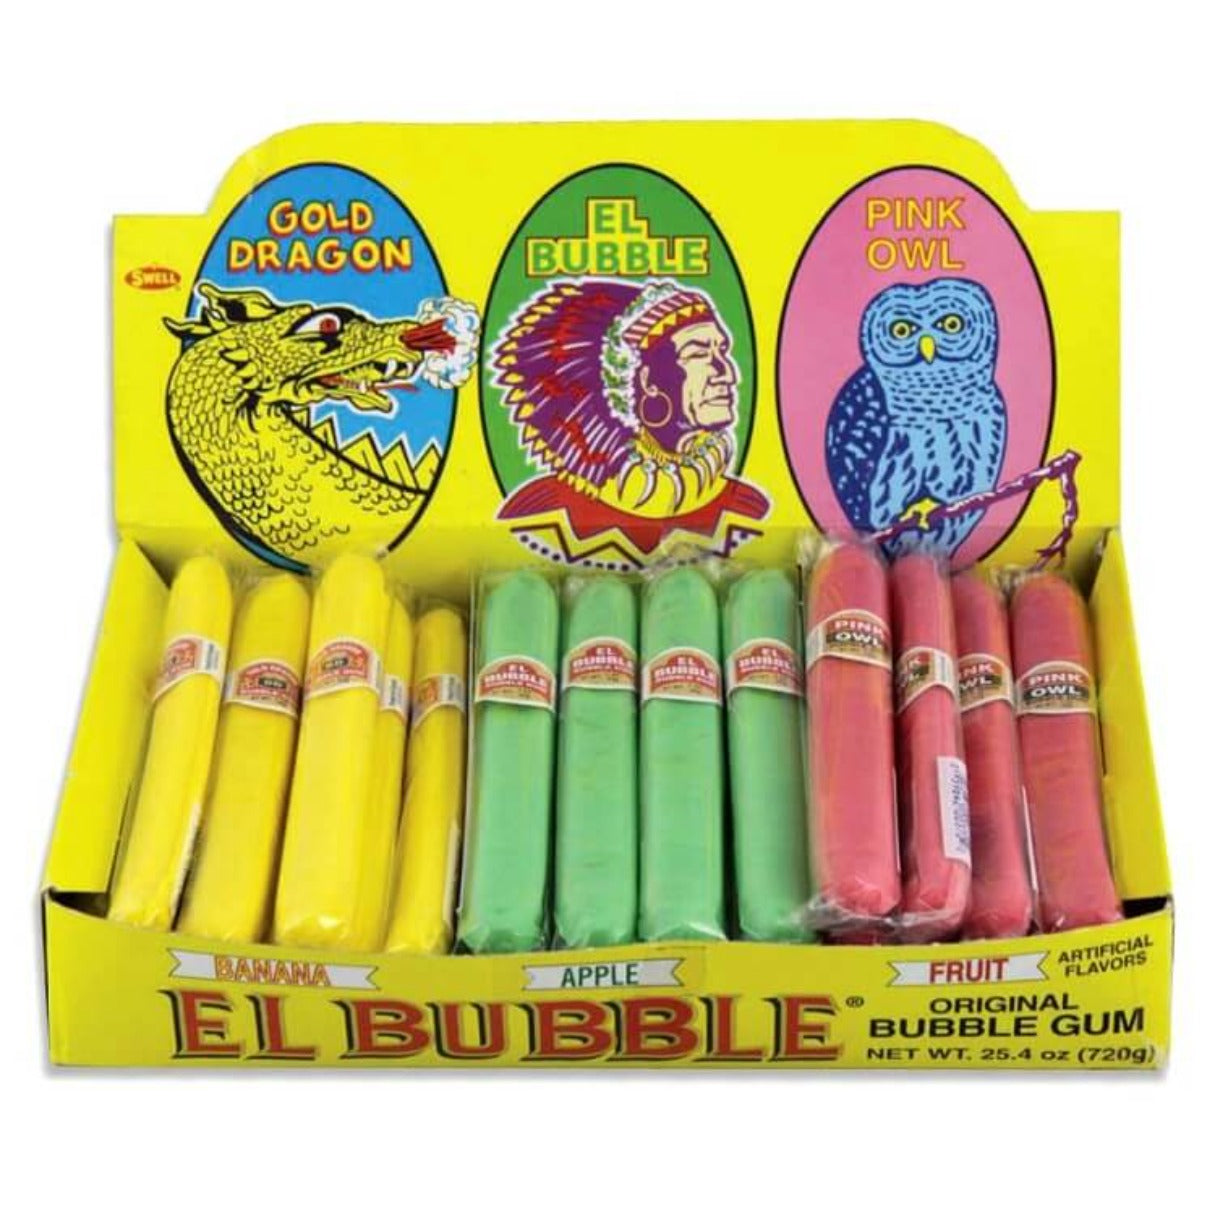 El Bubble II Original Bubble Gum Cigars - 36ct